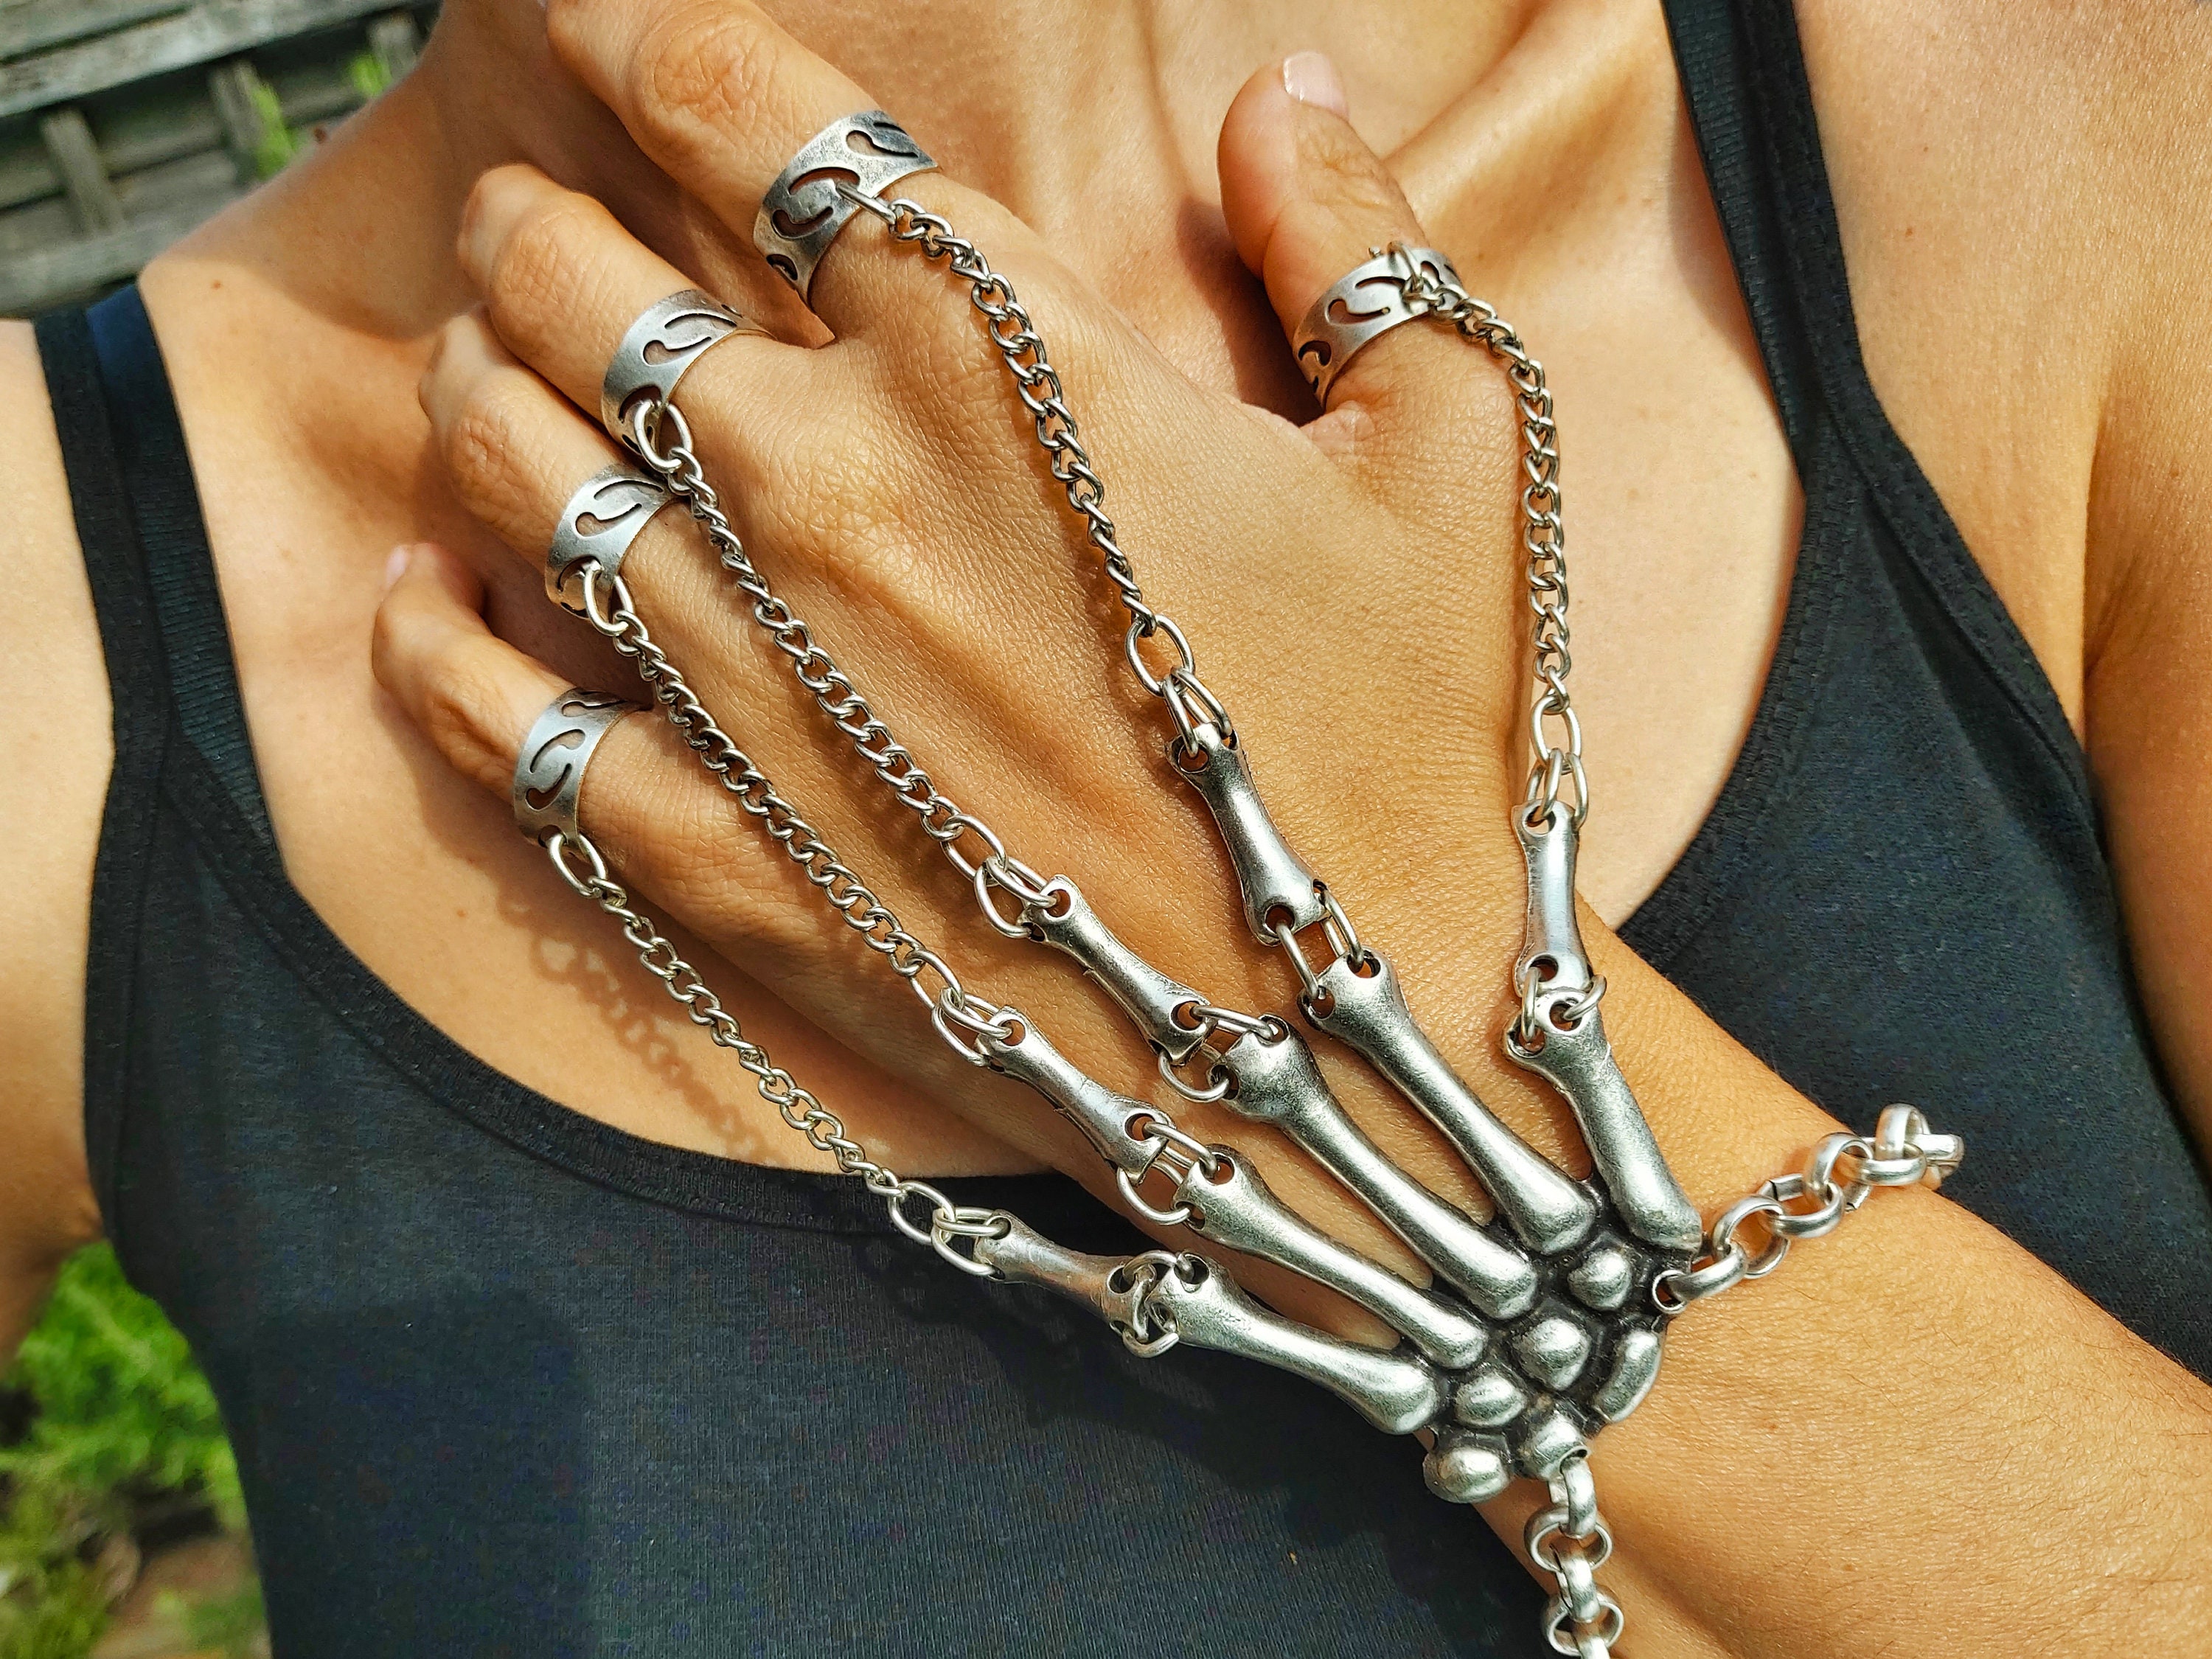 Amazon.com: Smiffys Skeleton Hand Bracelet : Clothing, Shoes & Jewelry